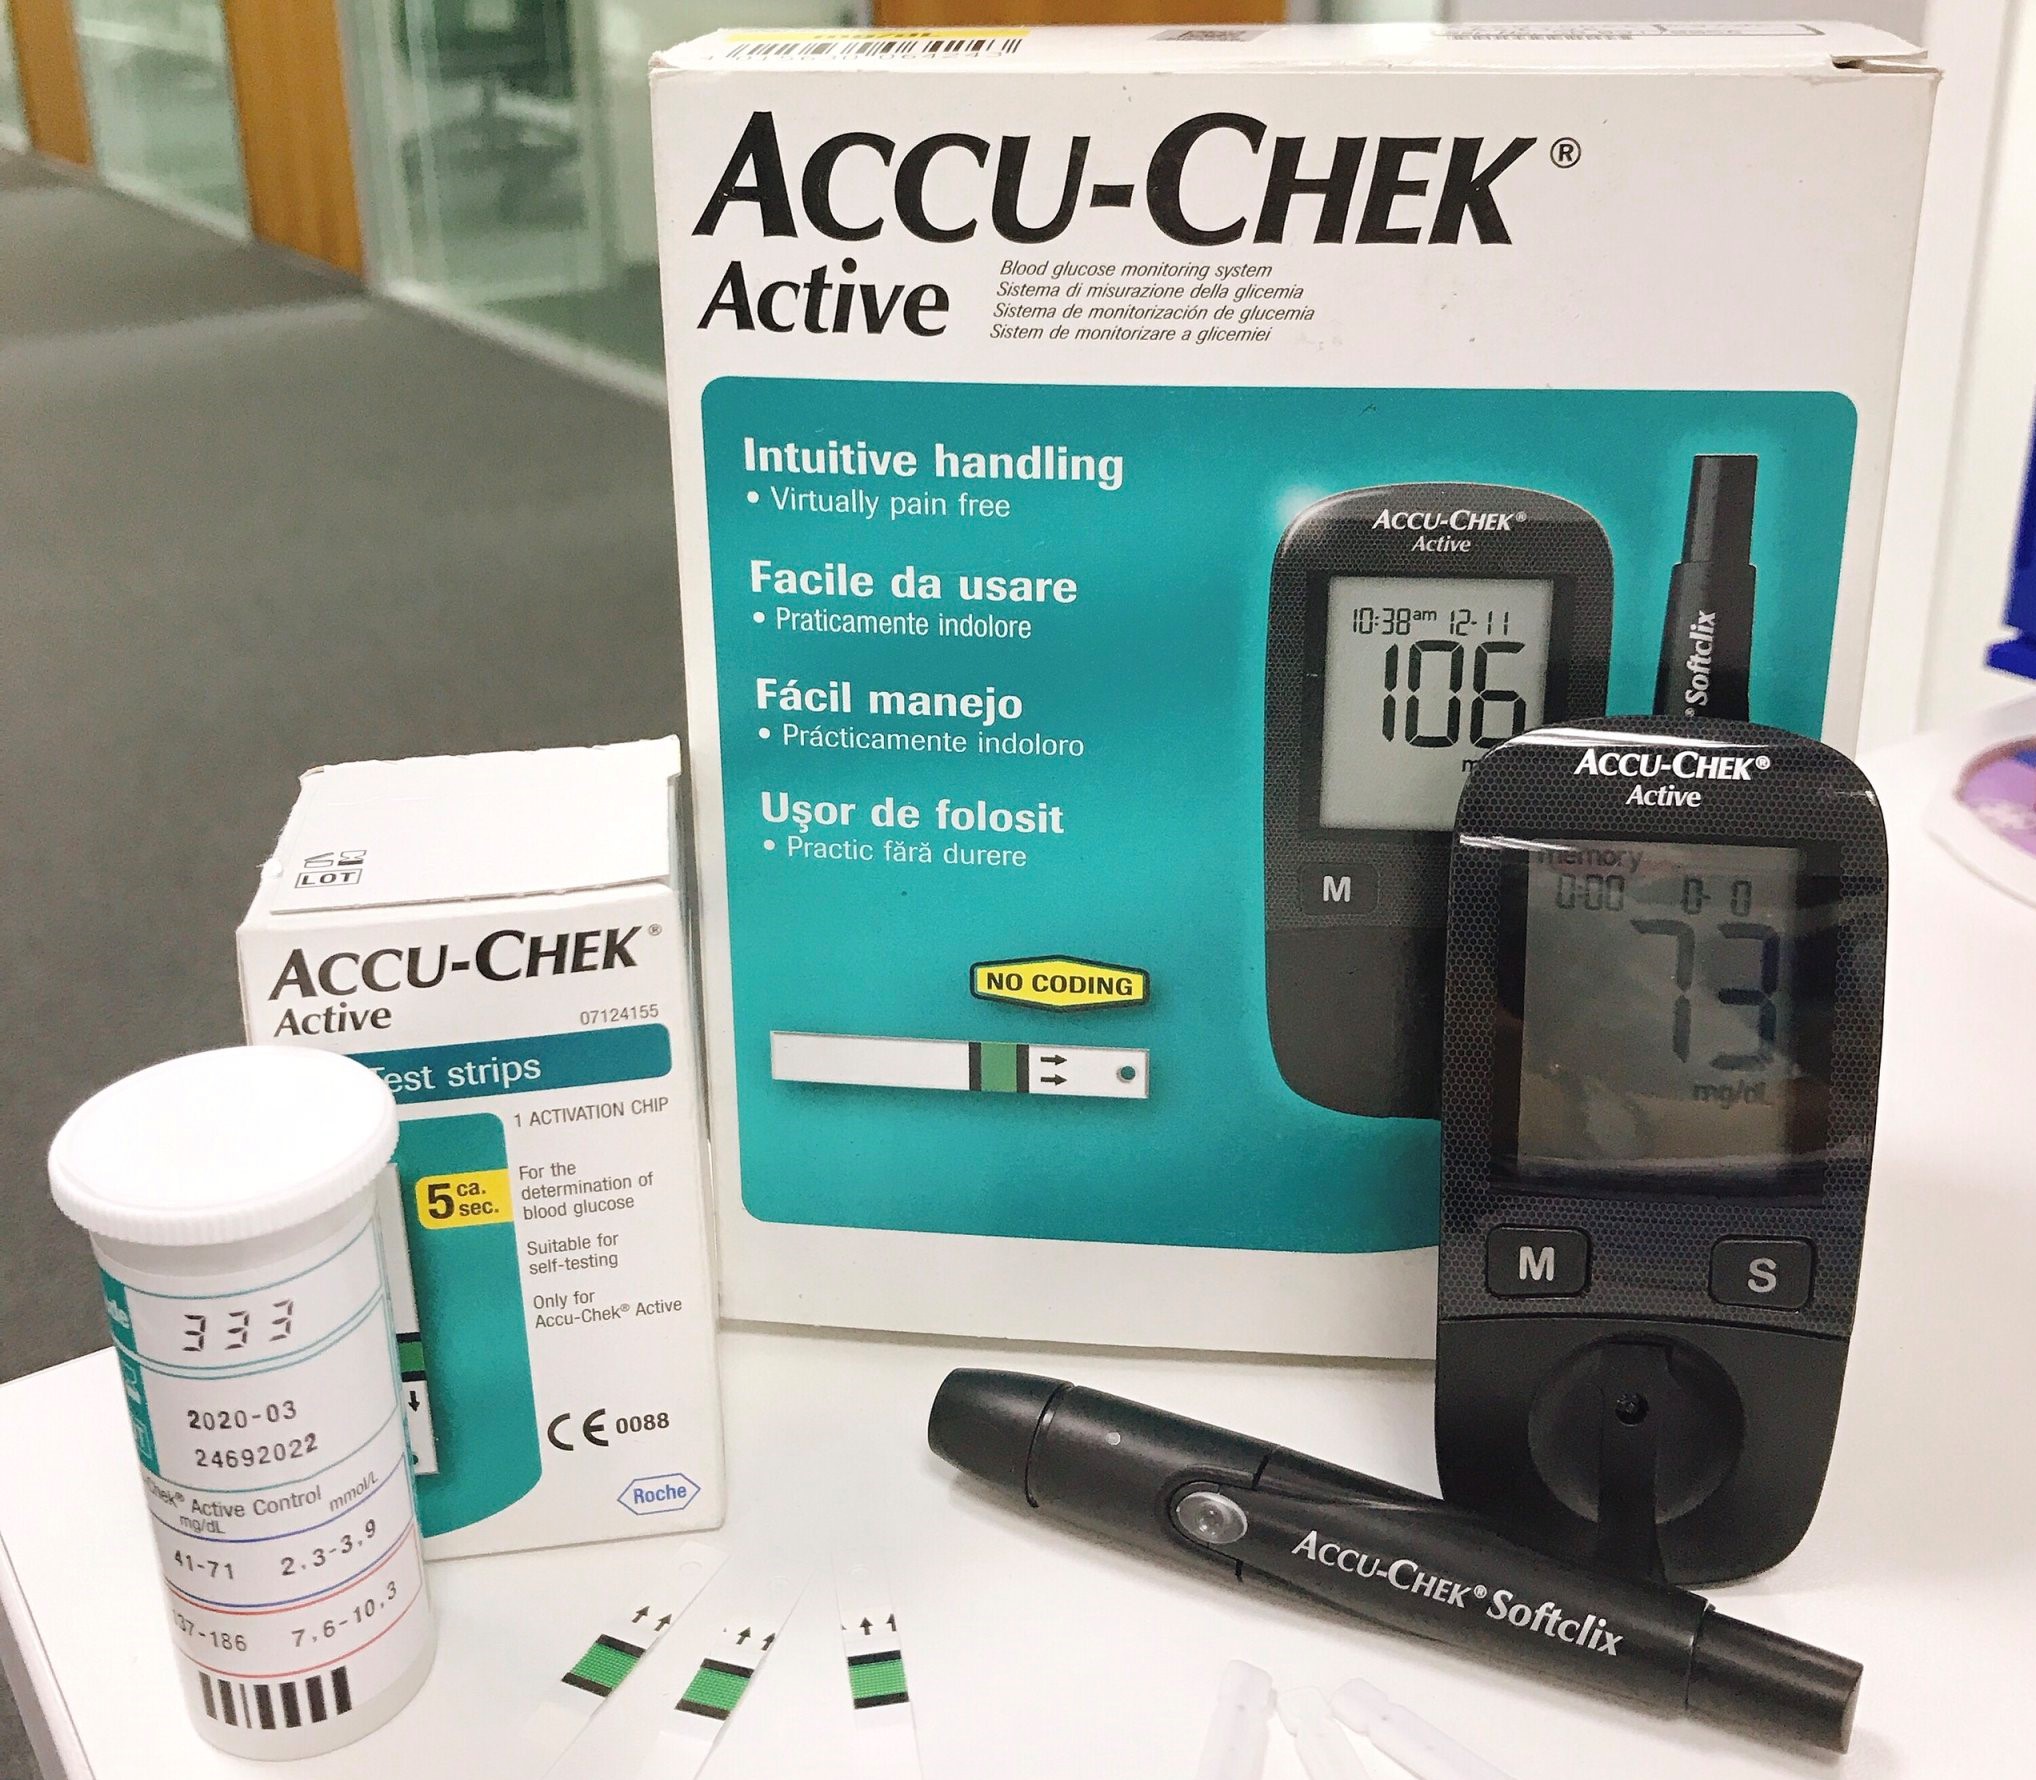 Máy đo đường huyết Accu Chek Active